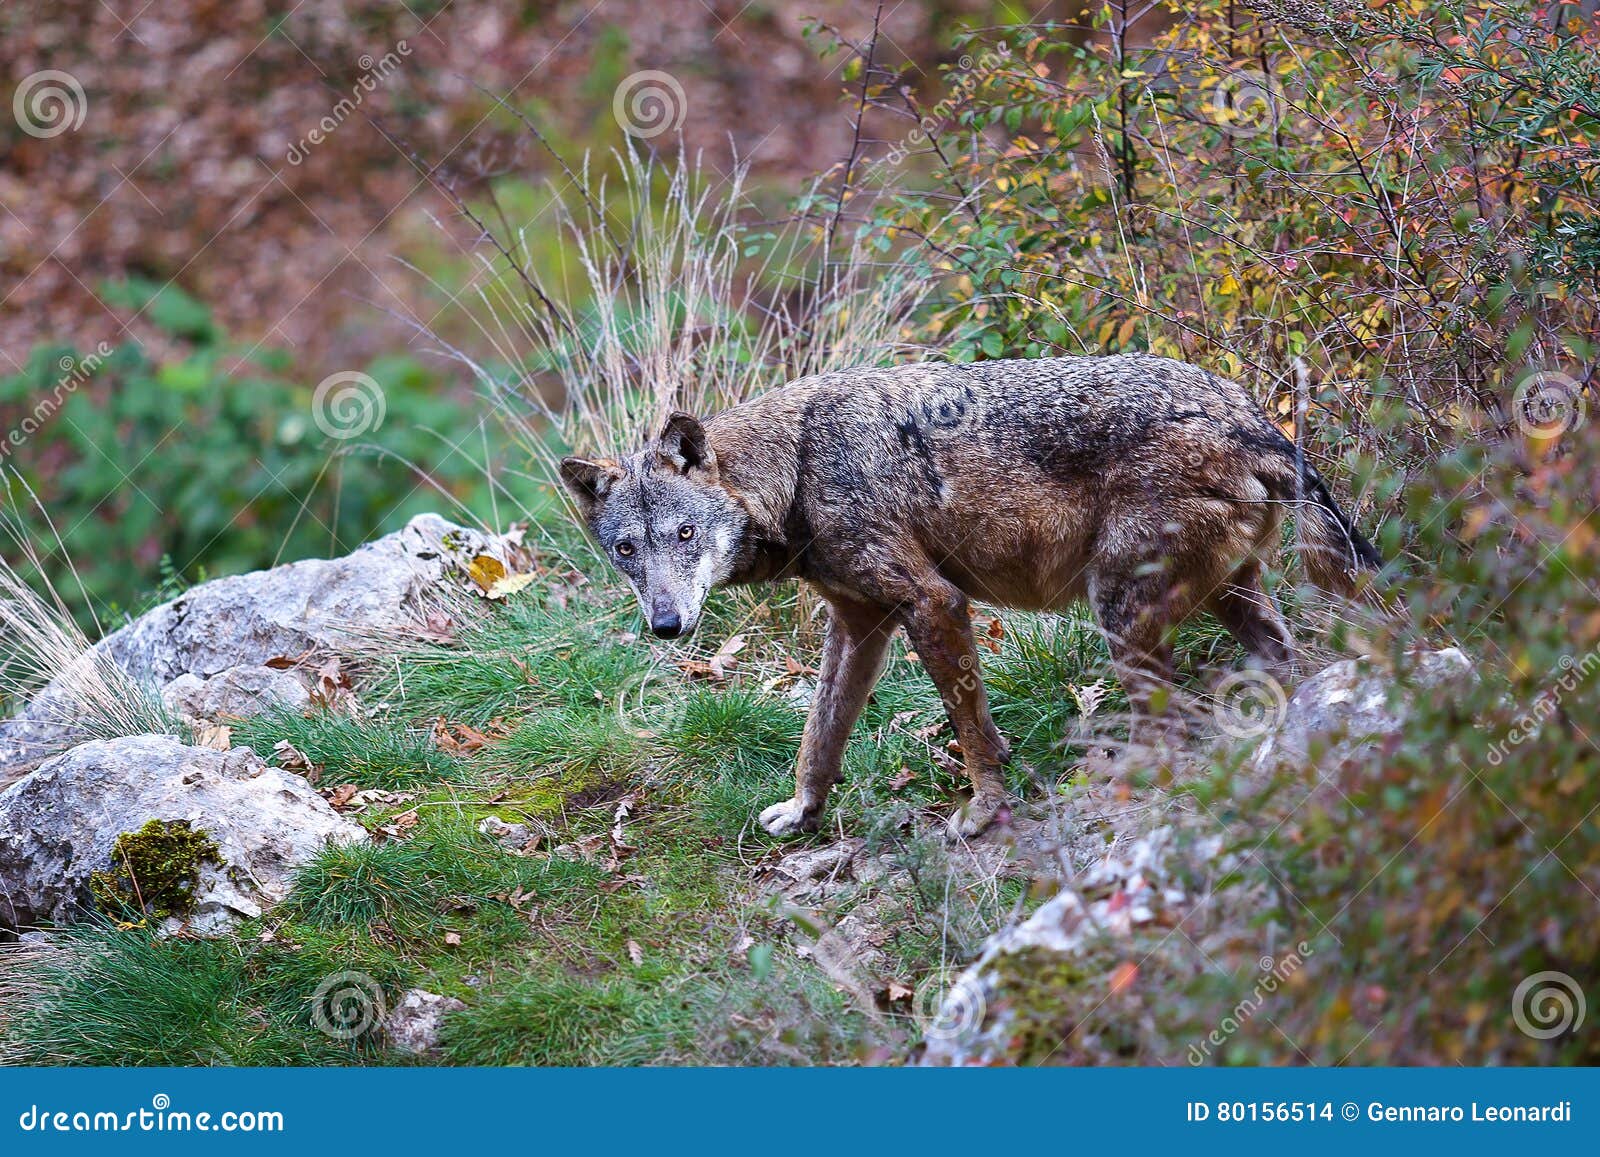 apennine wolf, canis lupus italicus